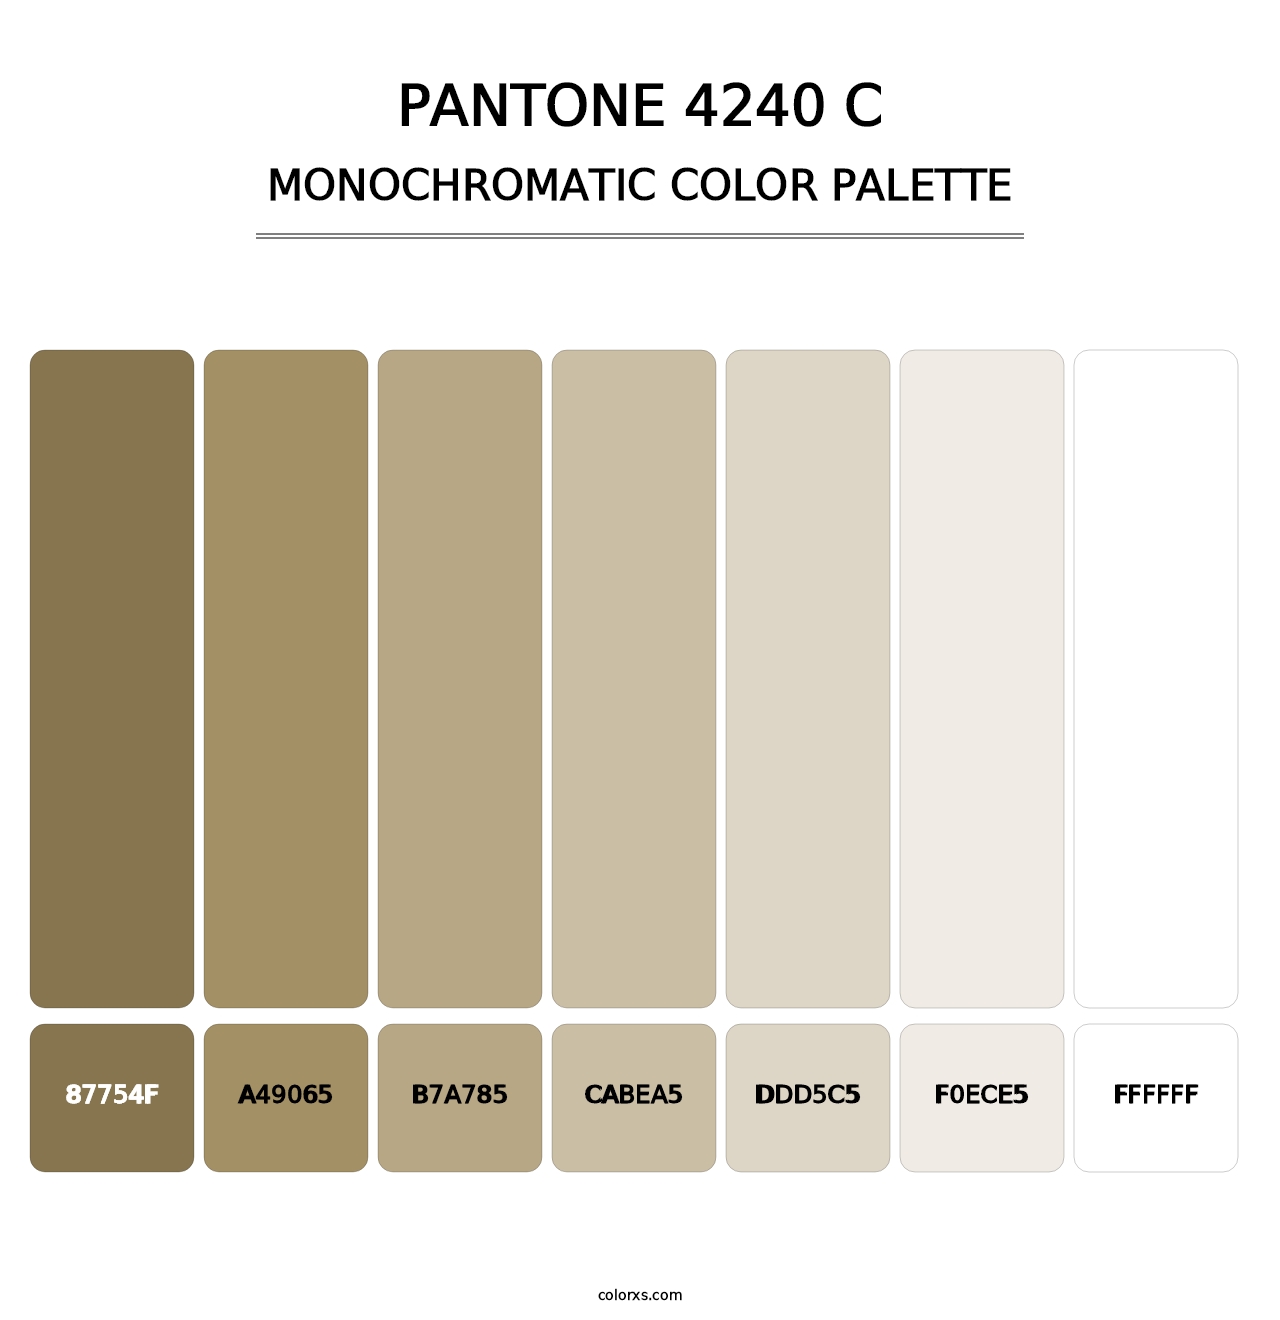 PANTONE 4240 C - Monochromatic Color Palette